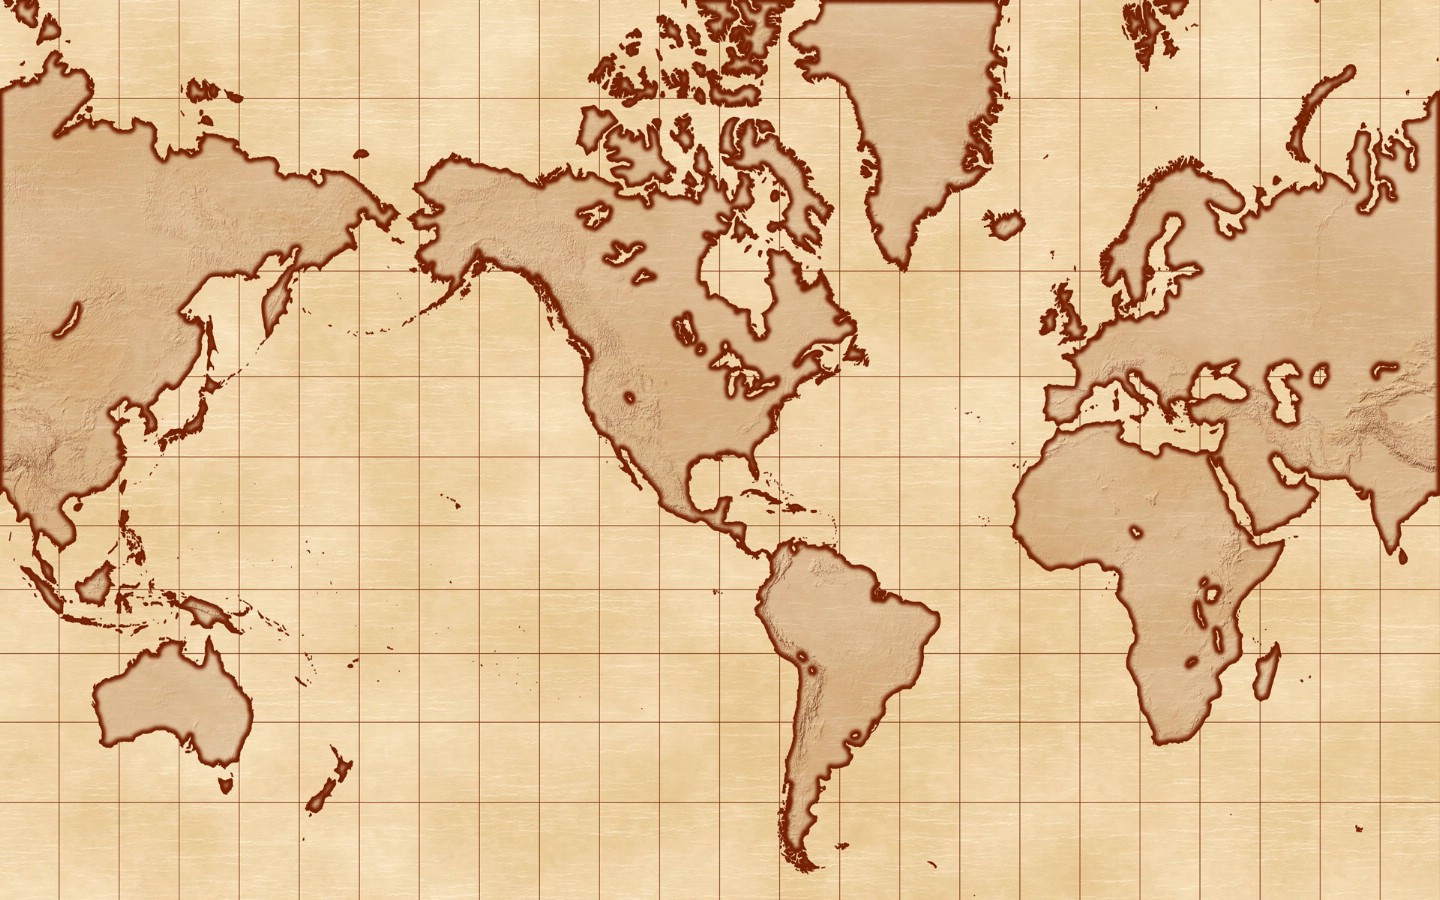 壁纸1440x900地图 我们的地球壁纸壁纸 地图！我们的地球壁纸壁纸 地图！我们的地球壁纸图片 地图！我们的地球壁纸素材 创意壁纸 创意图库 创意图片素材桌面壁纸